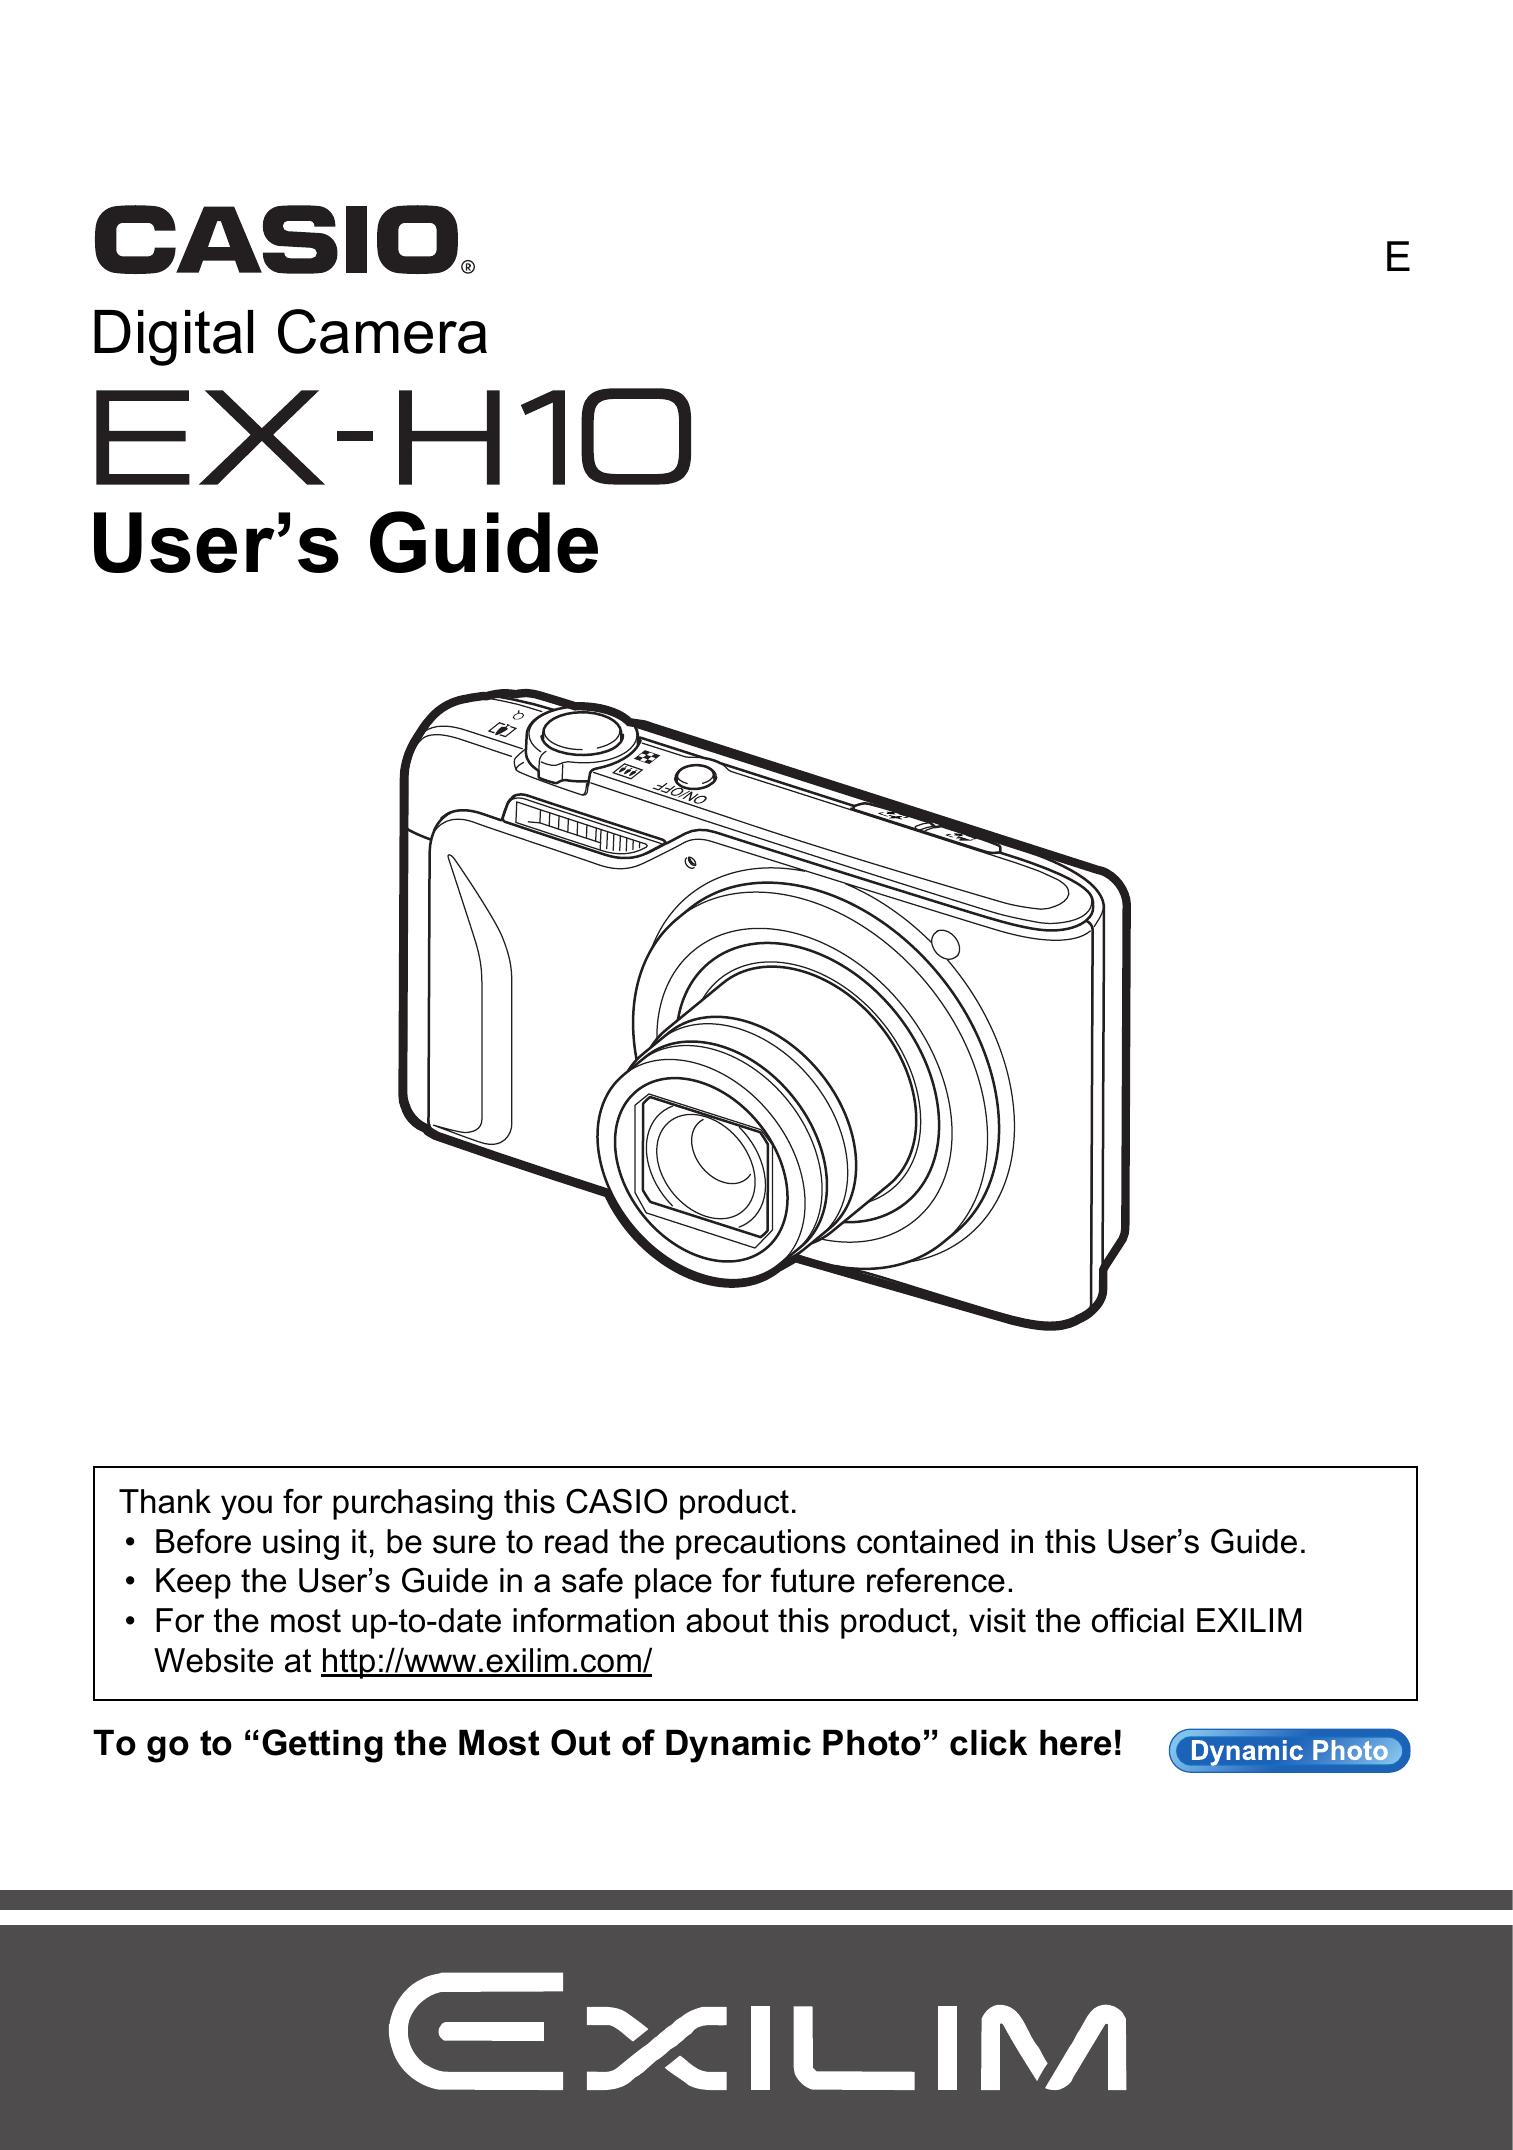 Casio EX-H10 Digital Camera User Manual